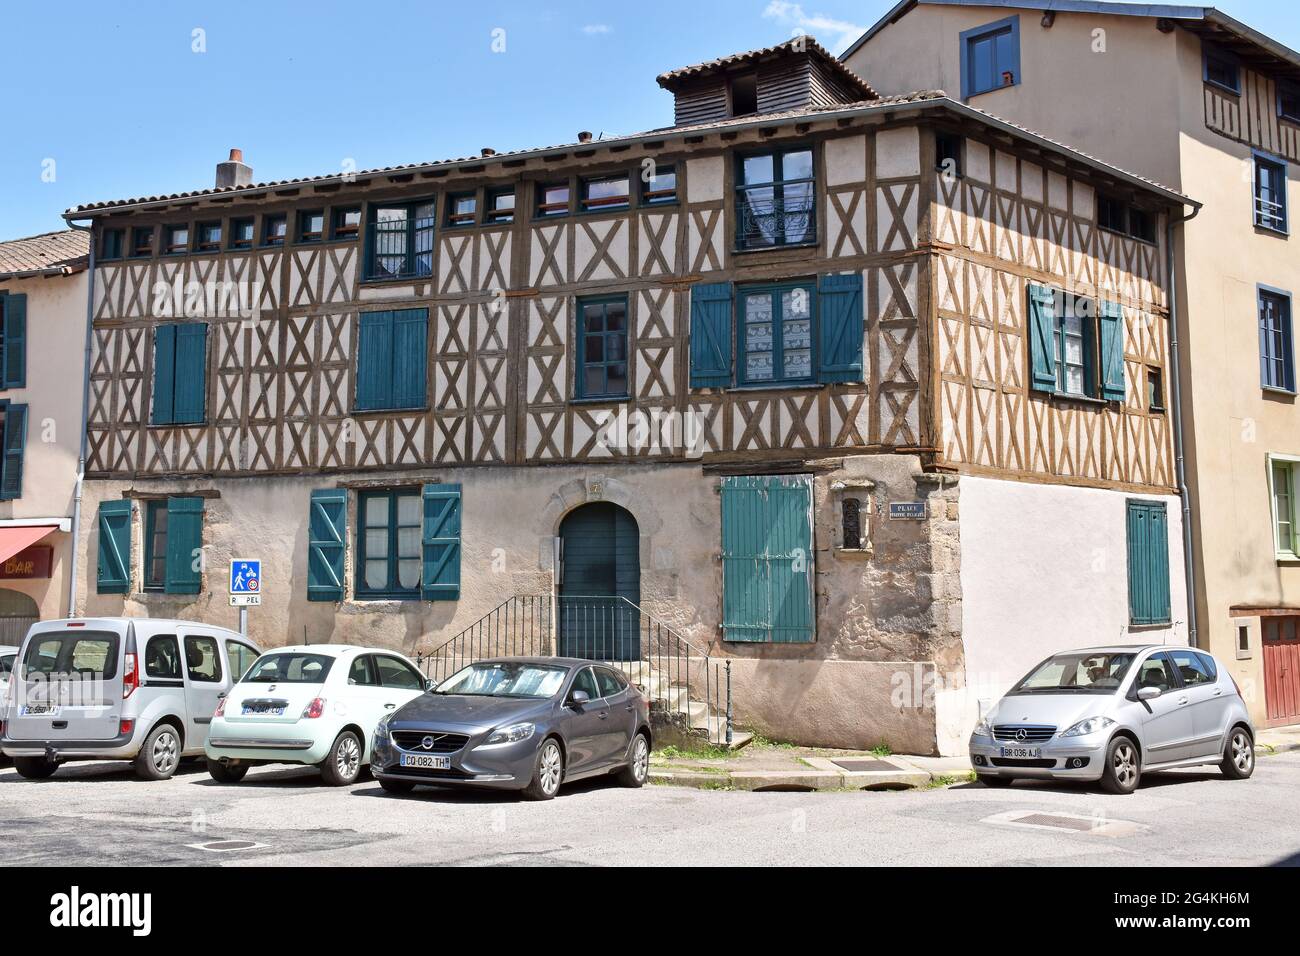 Ein restauriertes, dreistöckiges mittelalterliches Gebäude in Limoges, zwischen der Stadt und dem Fluss und der Straße, die zum Haupttor der Stadt führte. Stockfoto